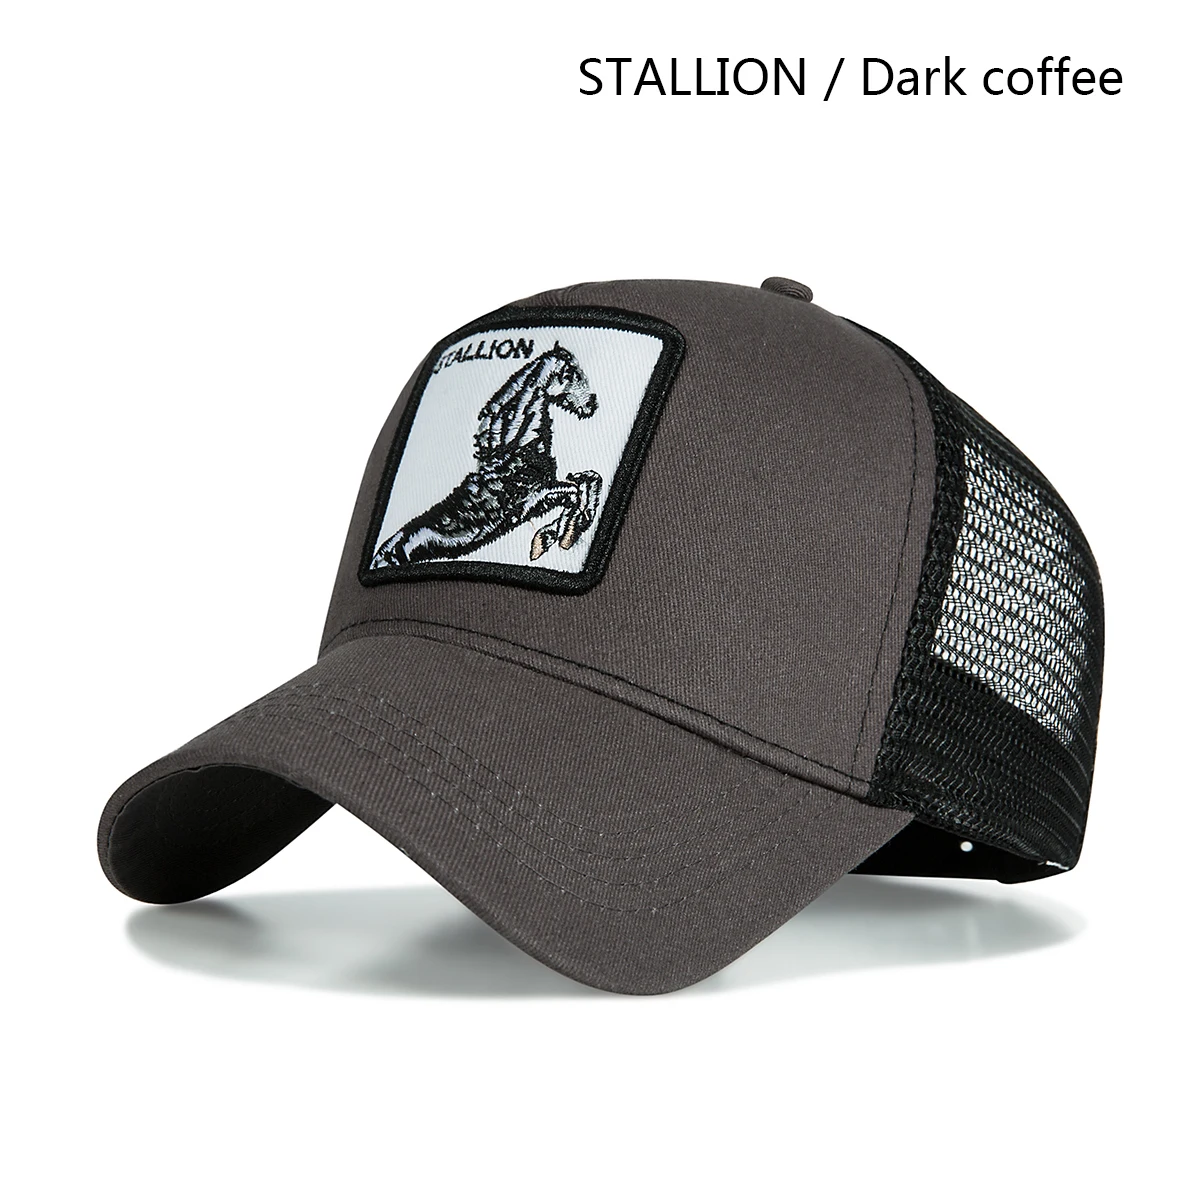 dark coffee stallion